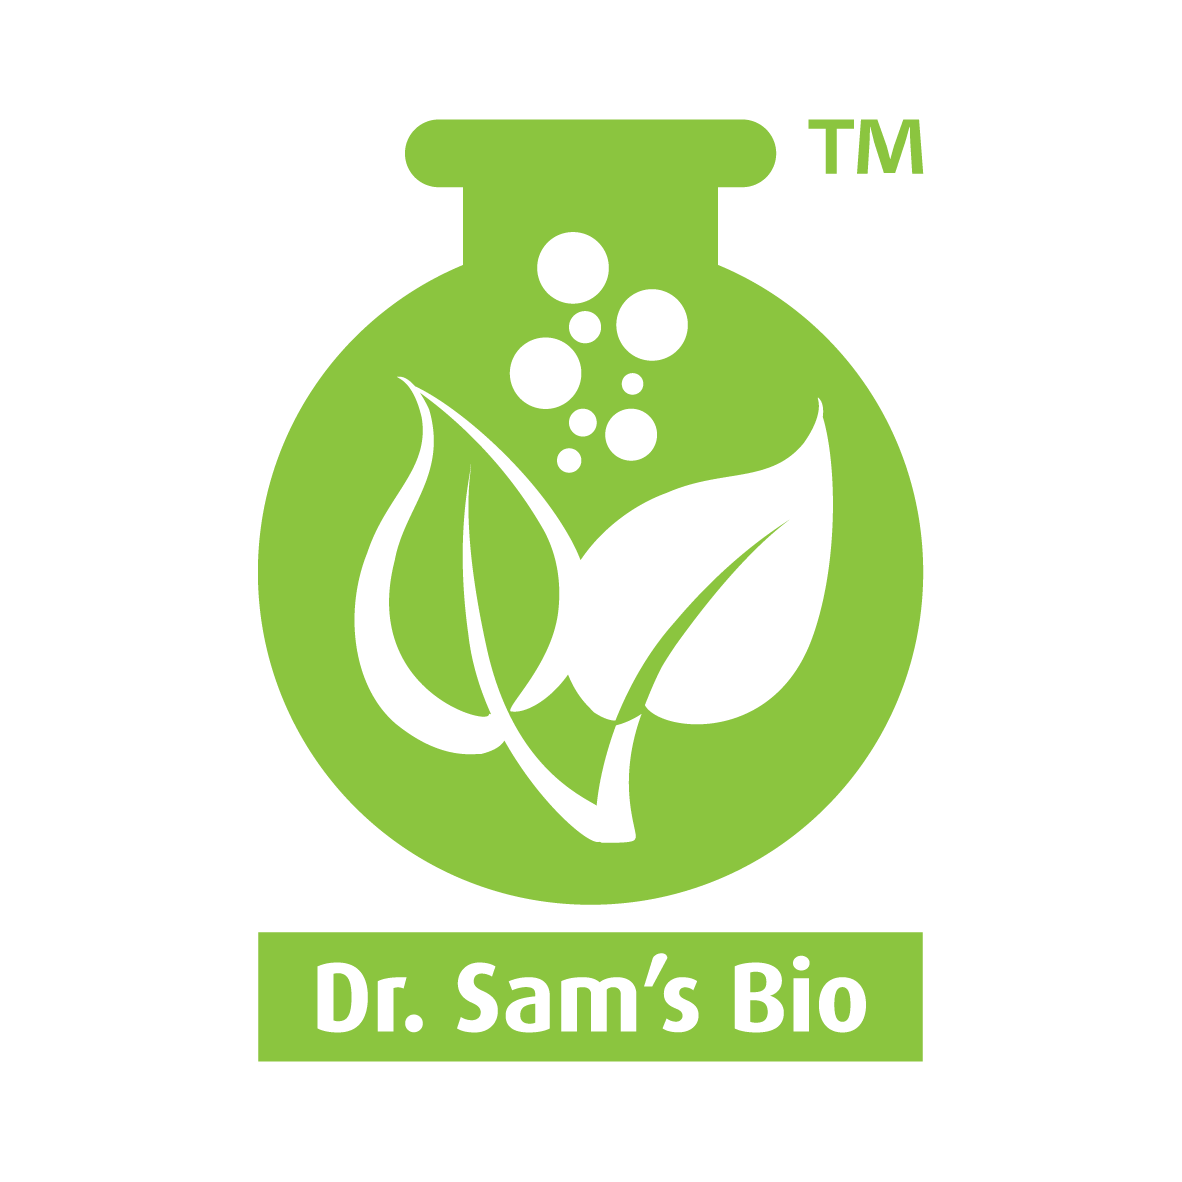 Dr. Sam’s Bio